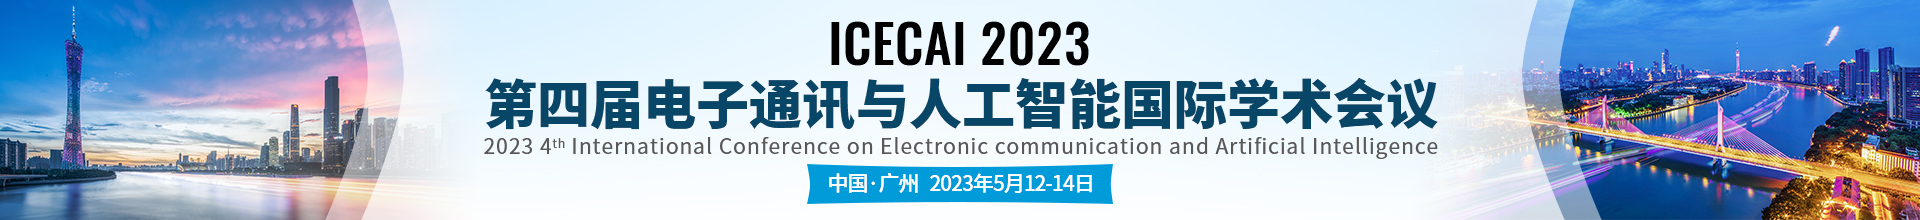 23年-5月-广州-ICECAI上线平台1920X220.jpg